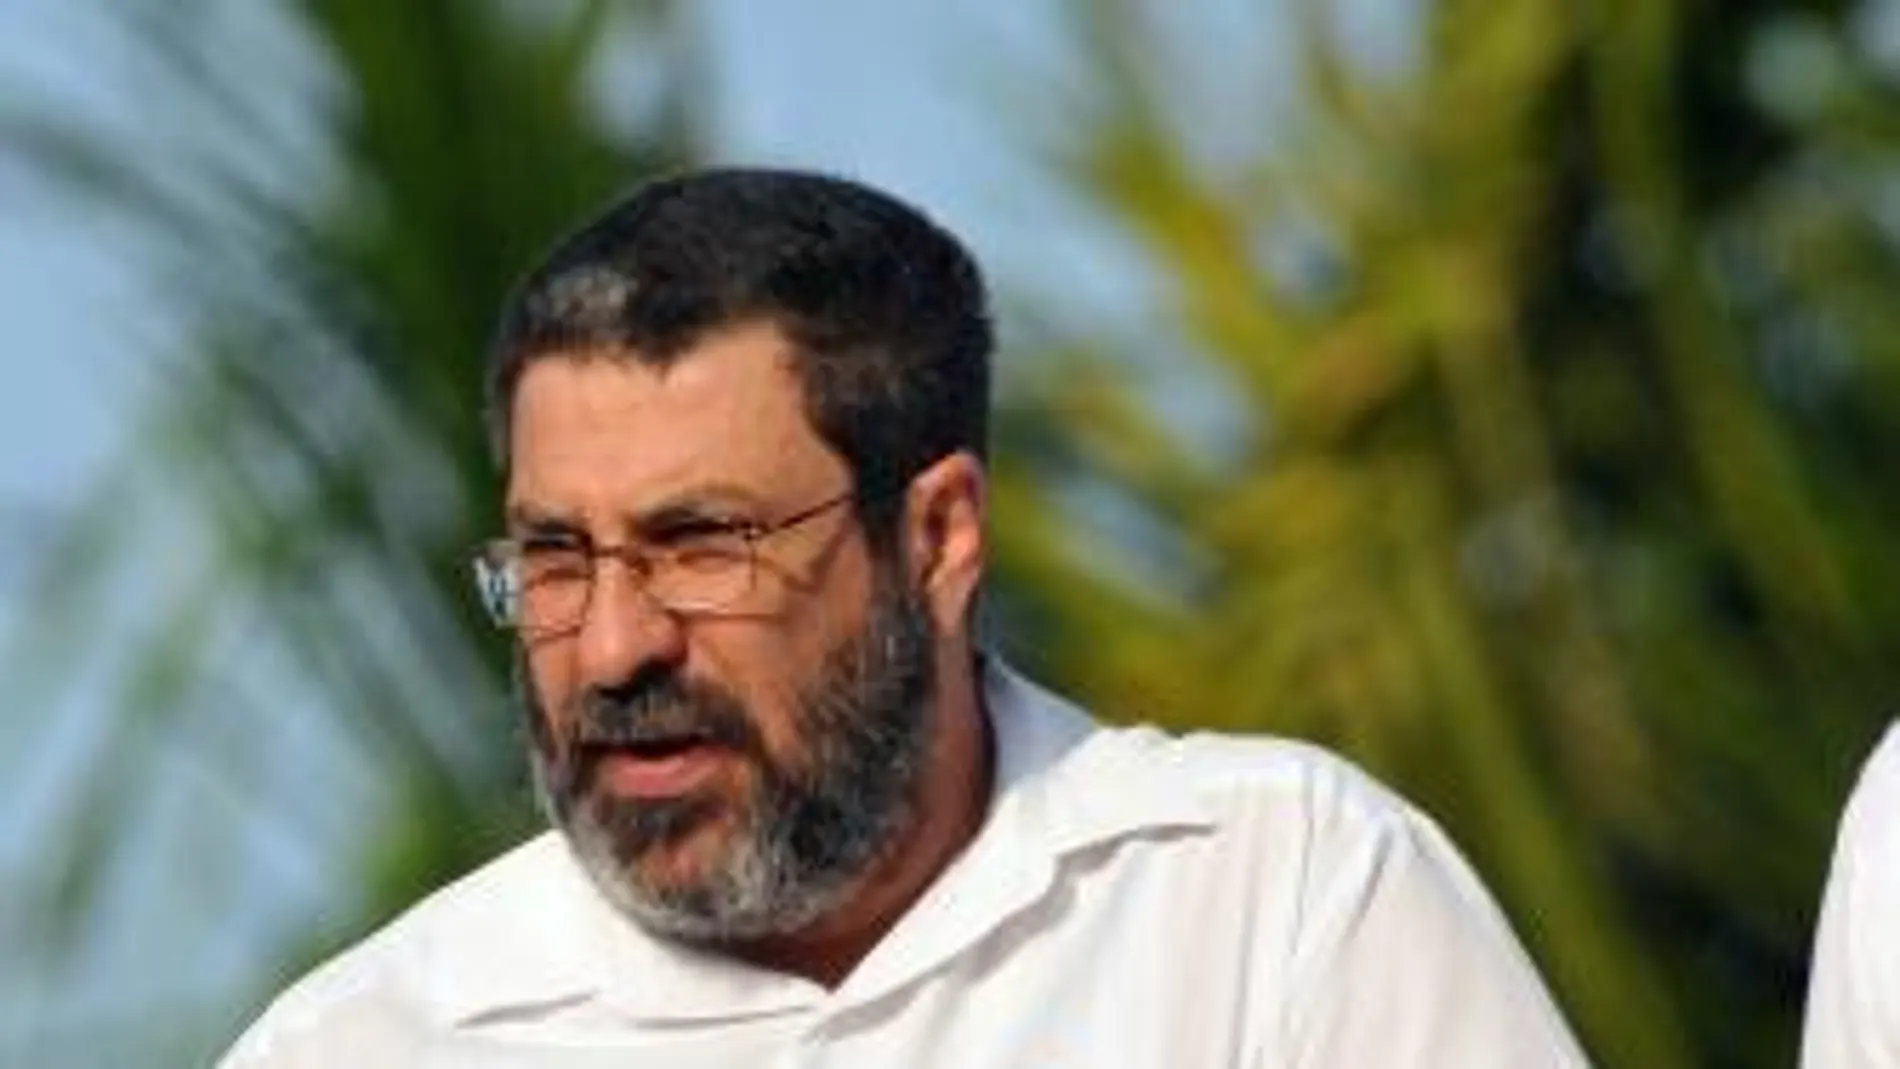 Sierra Cruz junto al ministro del Azúcar, Luis Manuel Ávila González, fueron destituidos por el presidente de Cuba